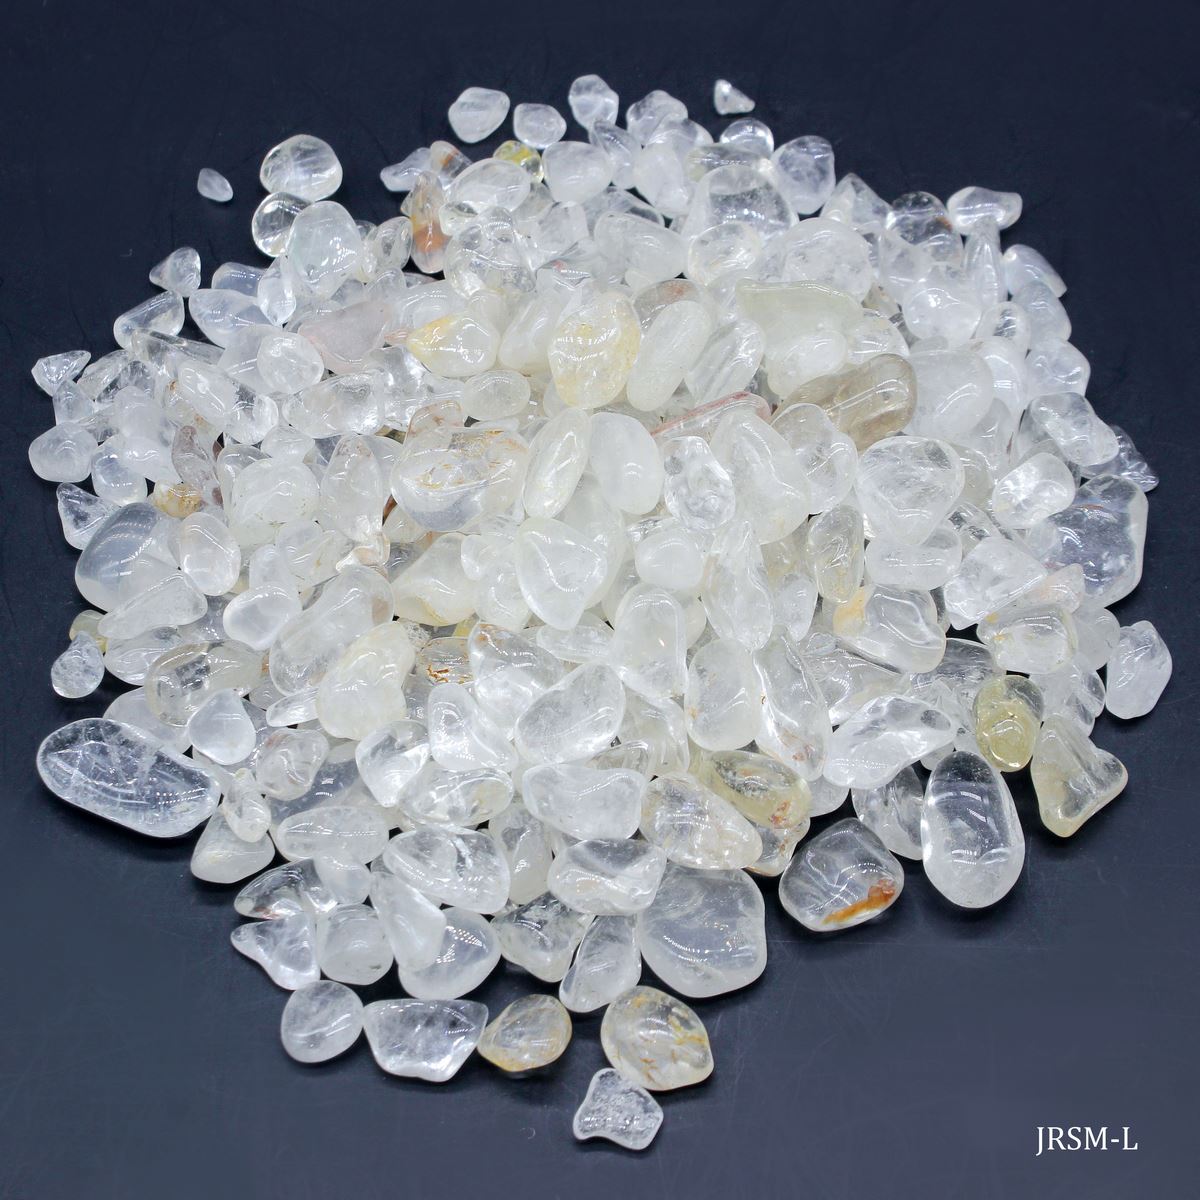 jags-mumbai Stone Resin Stone White Crystal 250gm